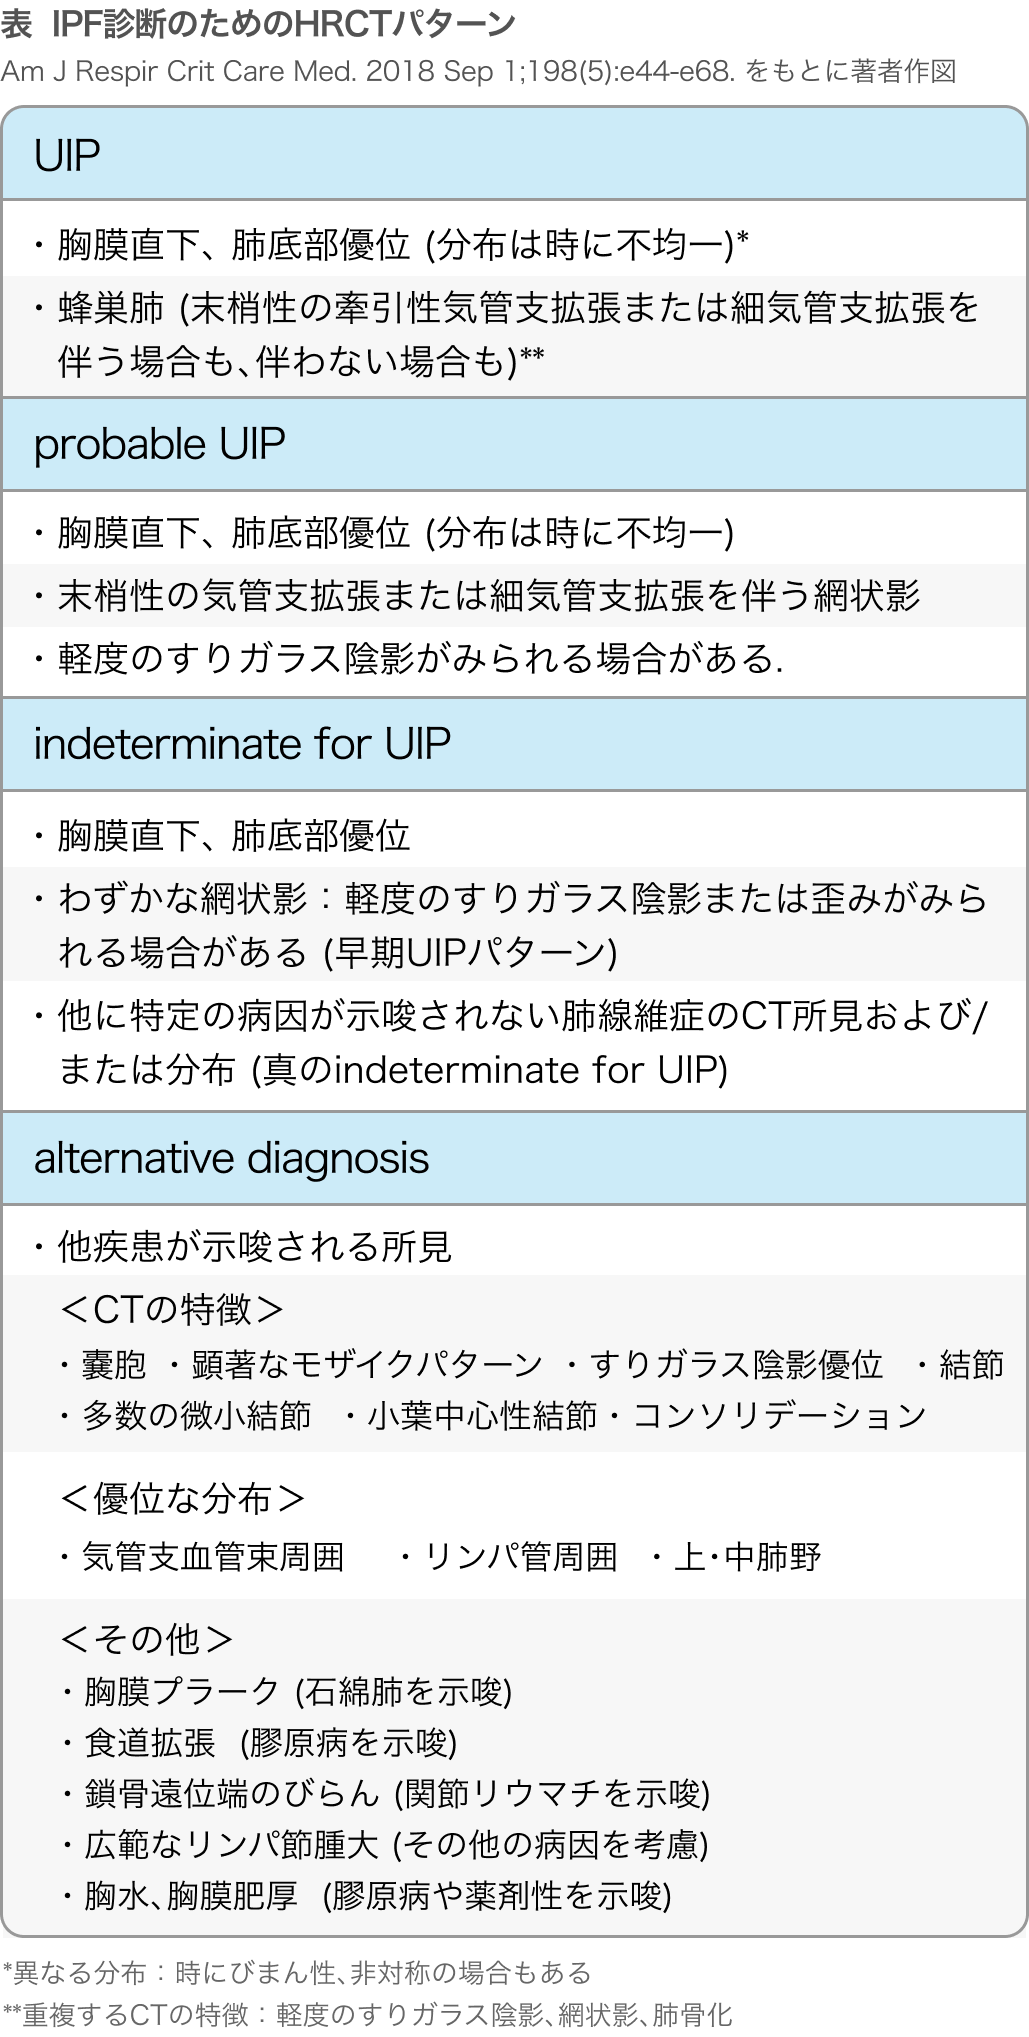 【IPF】特発性肺線維症の診断  (HRCTと病理組織パターン) 